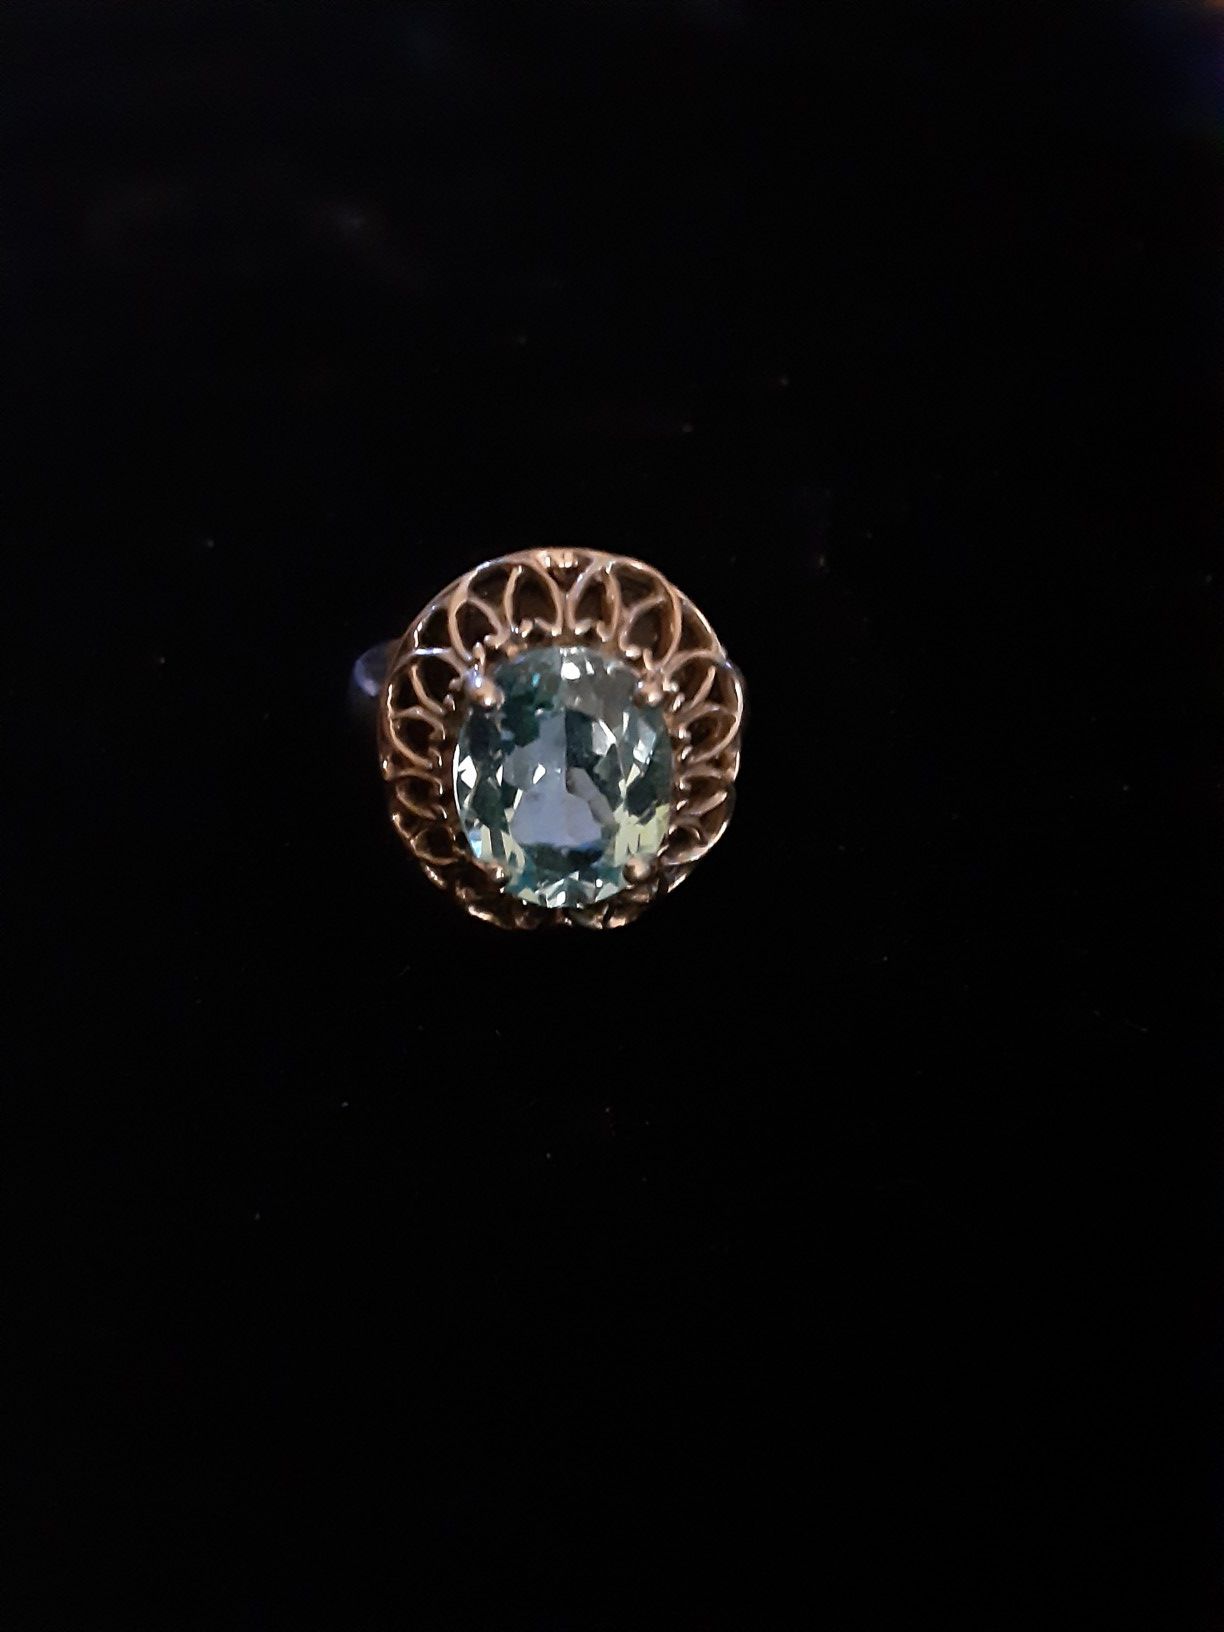 Size 6 gem stone ring